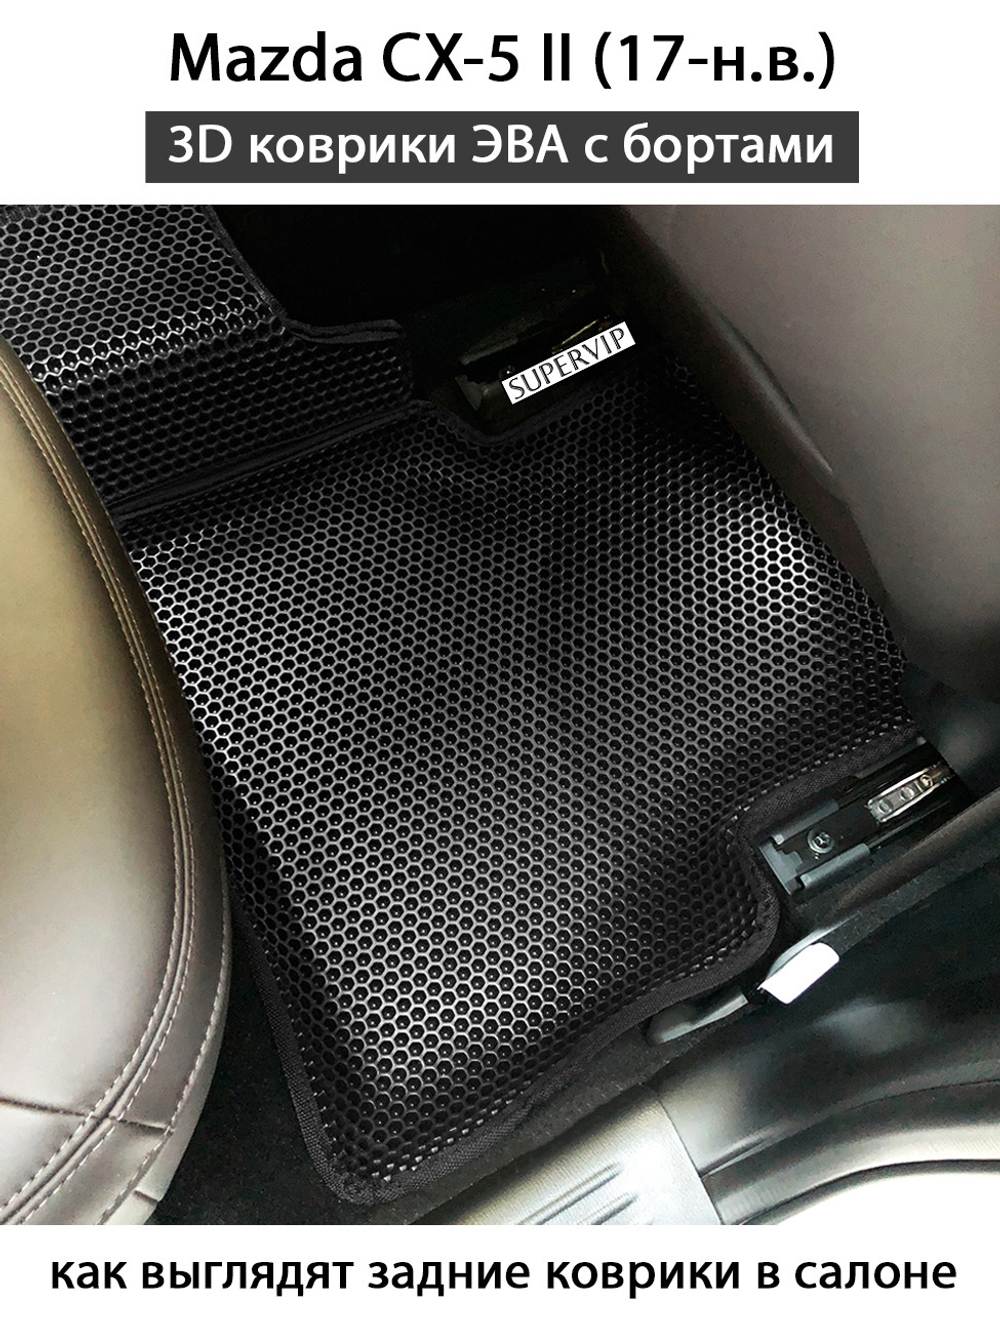 комплект эво ковриков в салон авто для Mazda cx-5 ii 17-н.в. от supervip